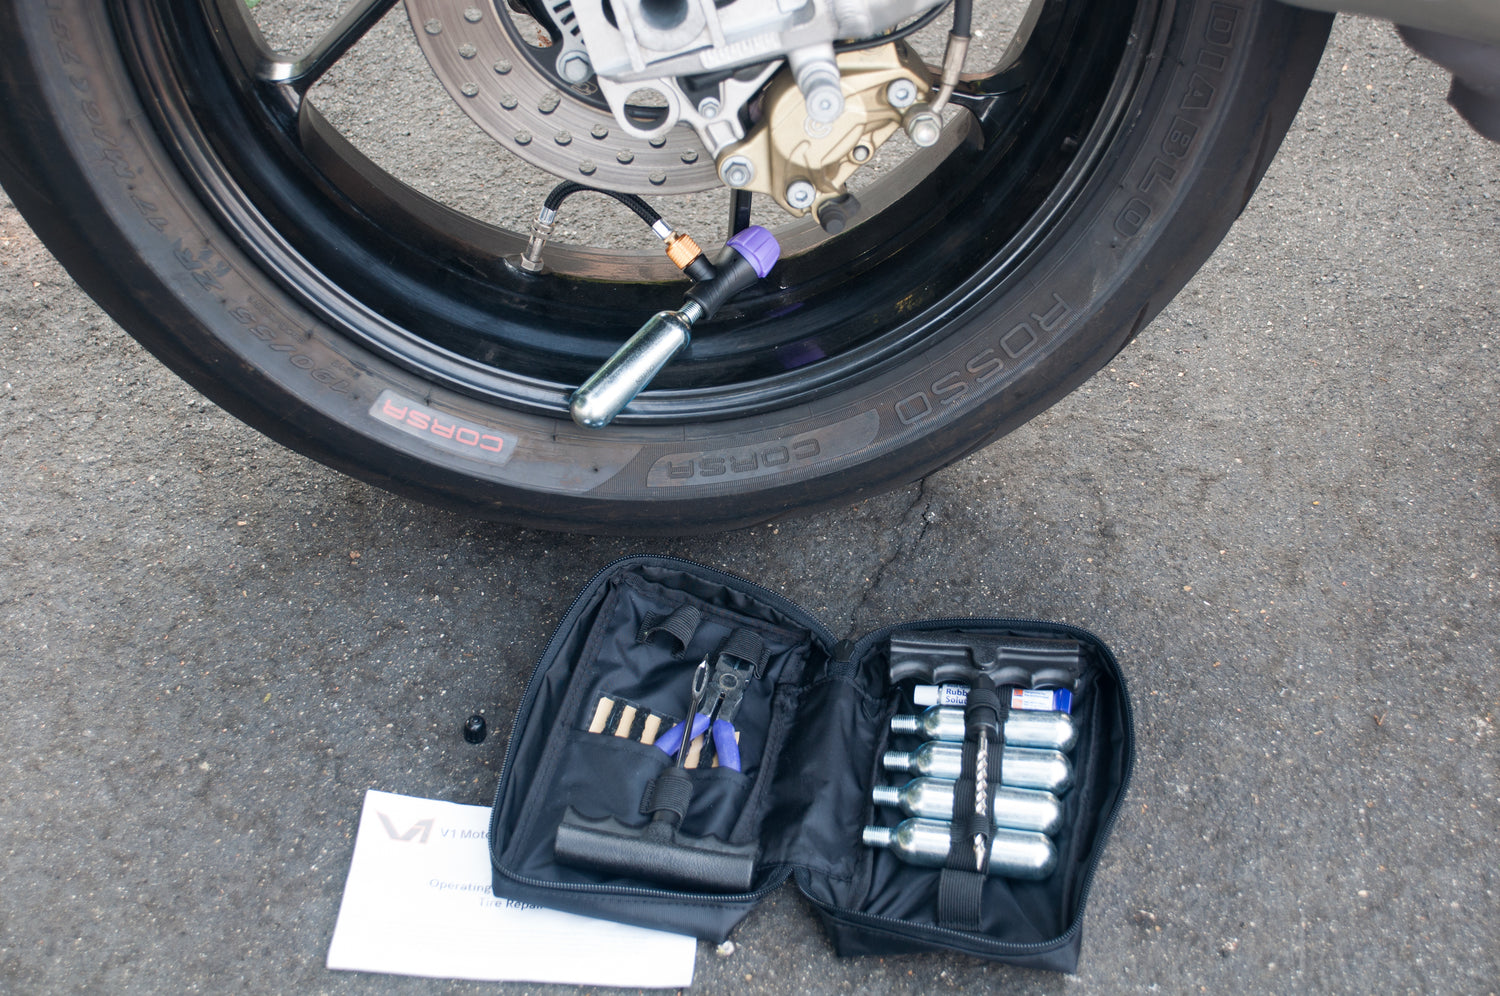 GADLANE Tubeless Tyre Puncture Repair Kit - 7pc Flat Tyre Repair Kit for  Car, Motorcycle, Truck, ATV